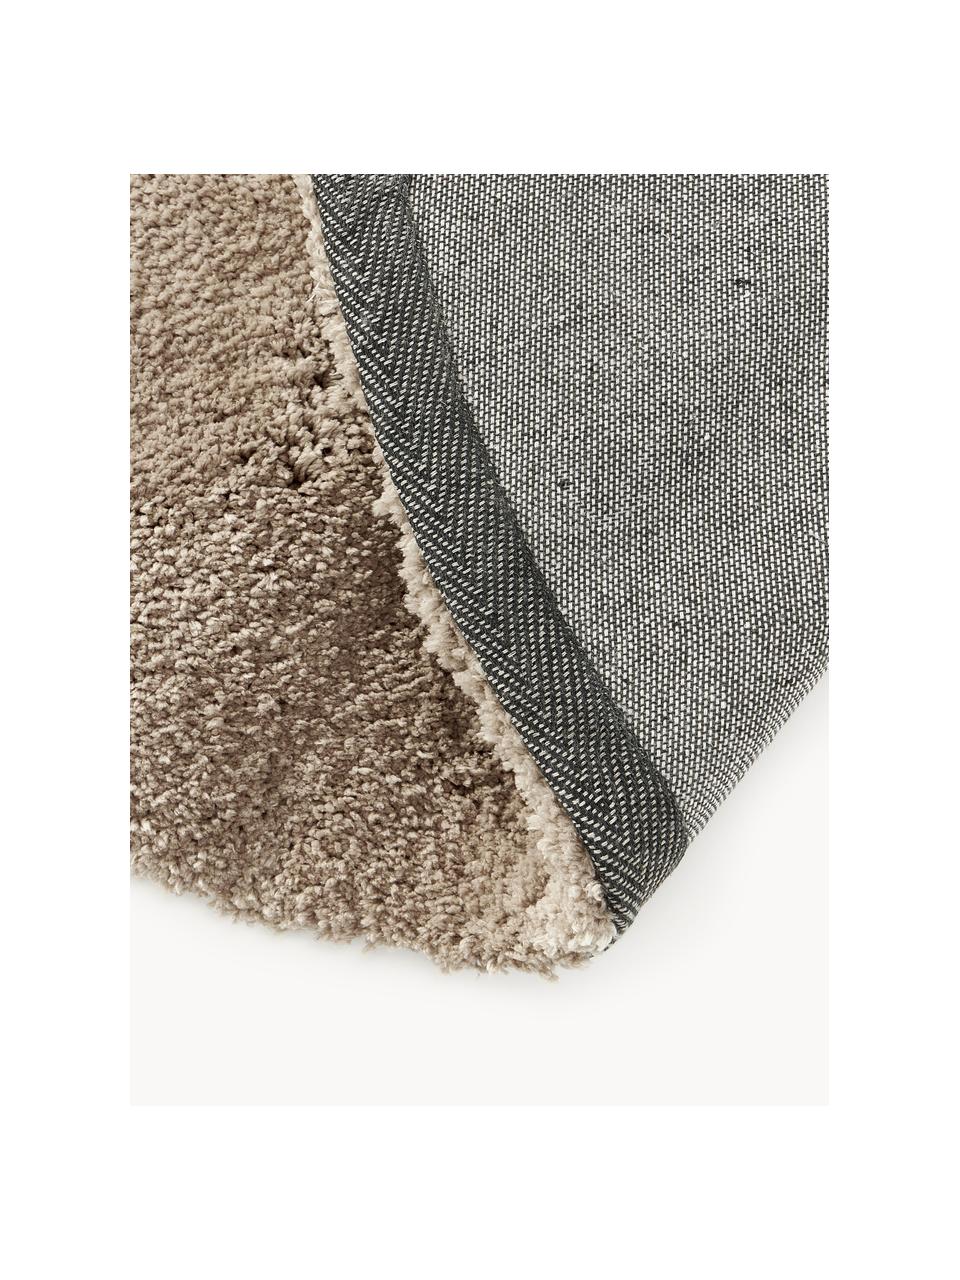 Načechraný kulatý koberec s vysokým vlasem Leighton, Mikrovlákno (100 % polyester, s certifikátem GRS), Hnědá, Ø 120 cm (velikost S)